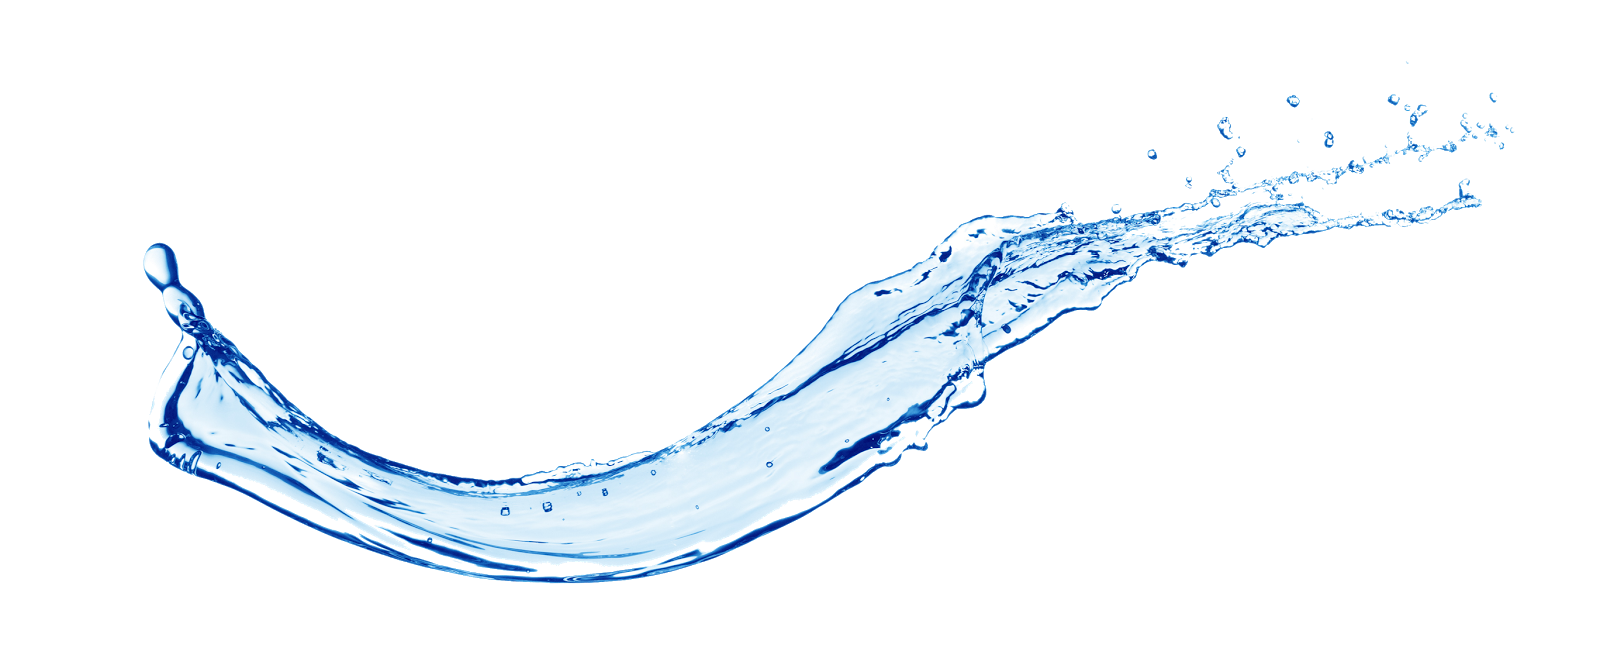 Water Splash - Fruit Water Splash, Transparent background PNG HD thumbnail